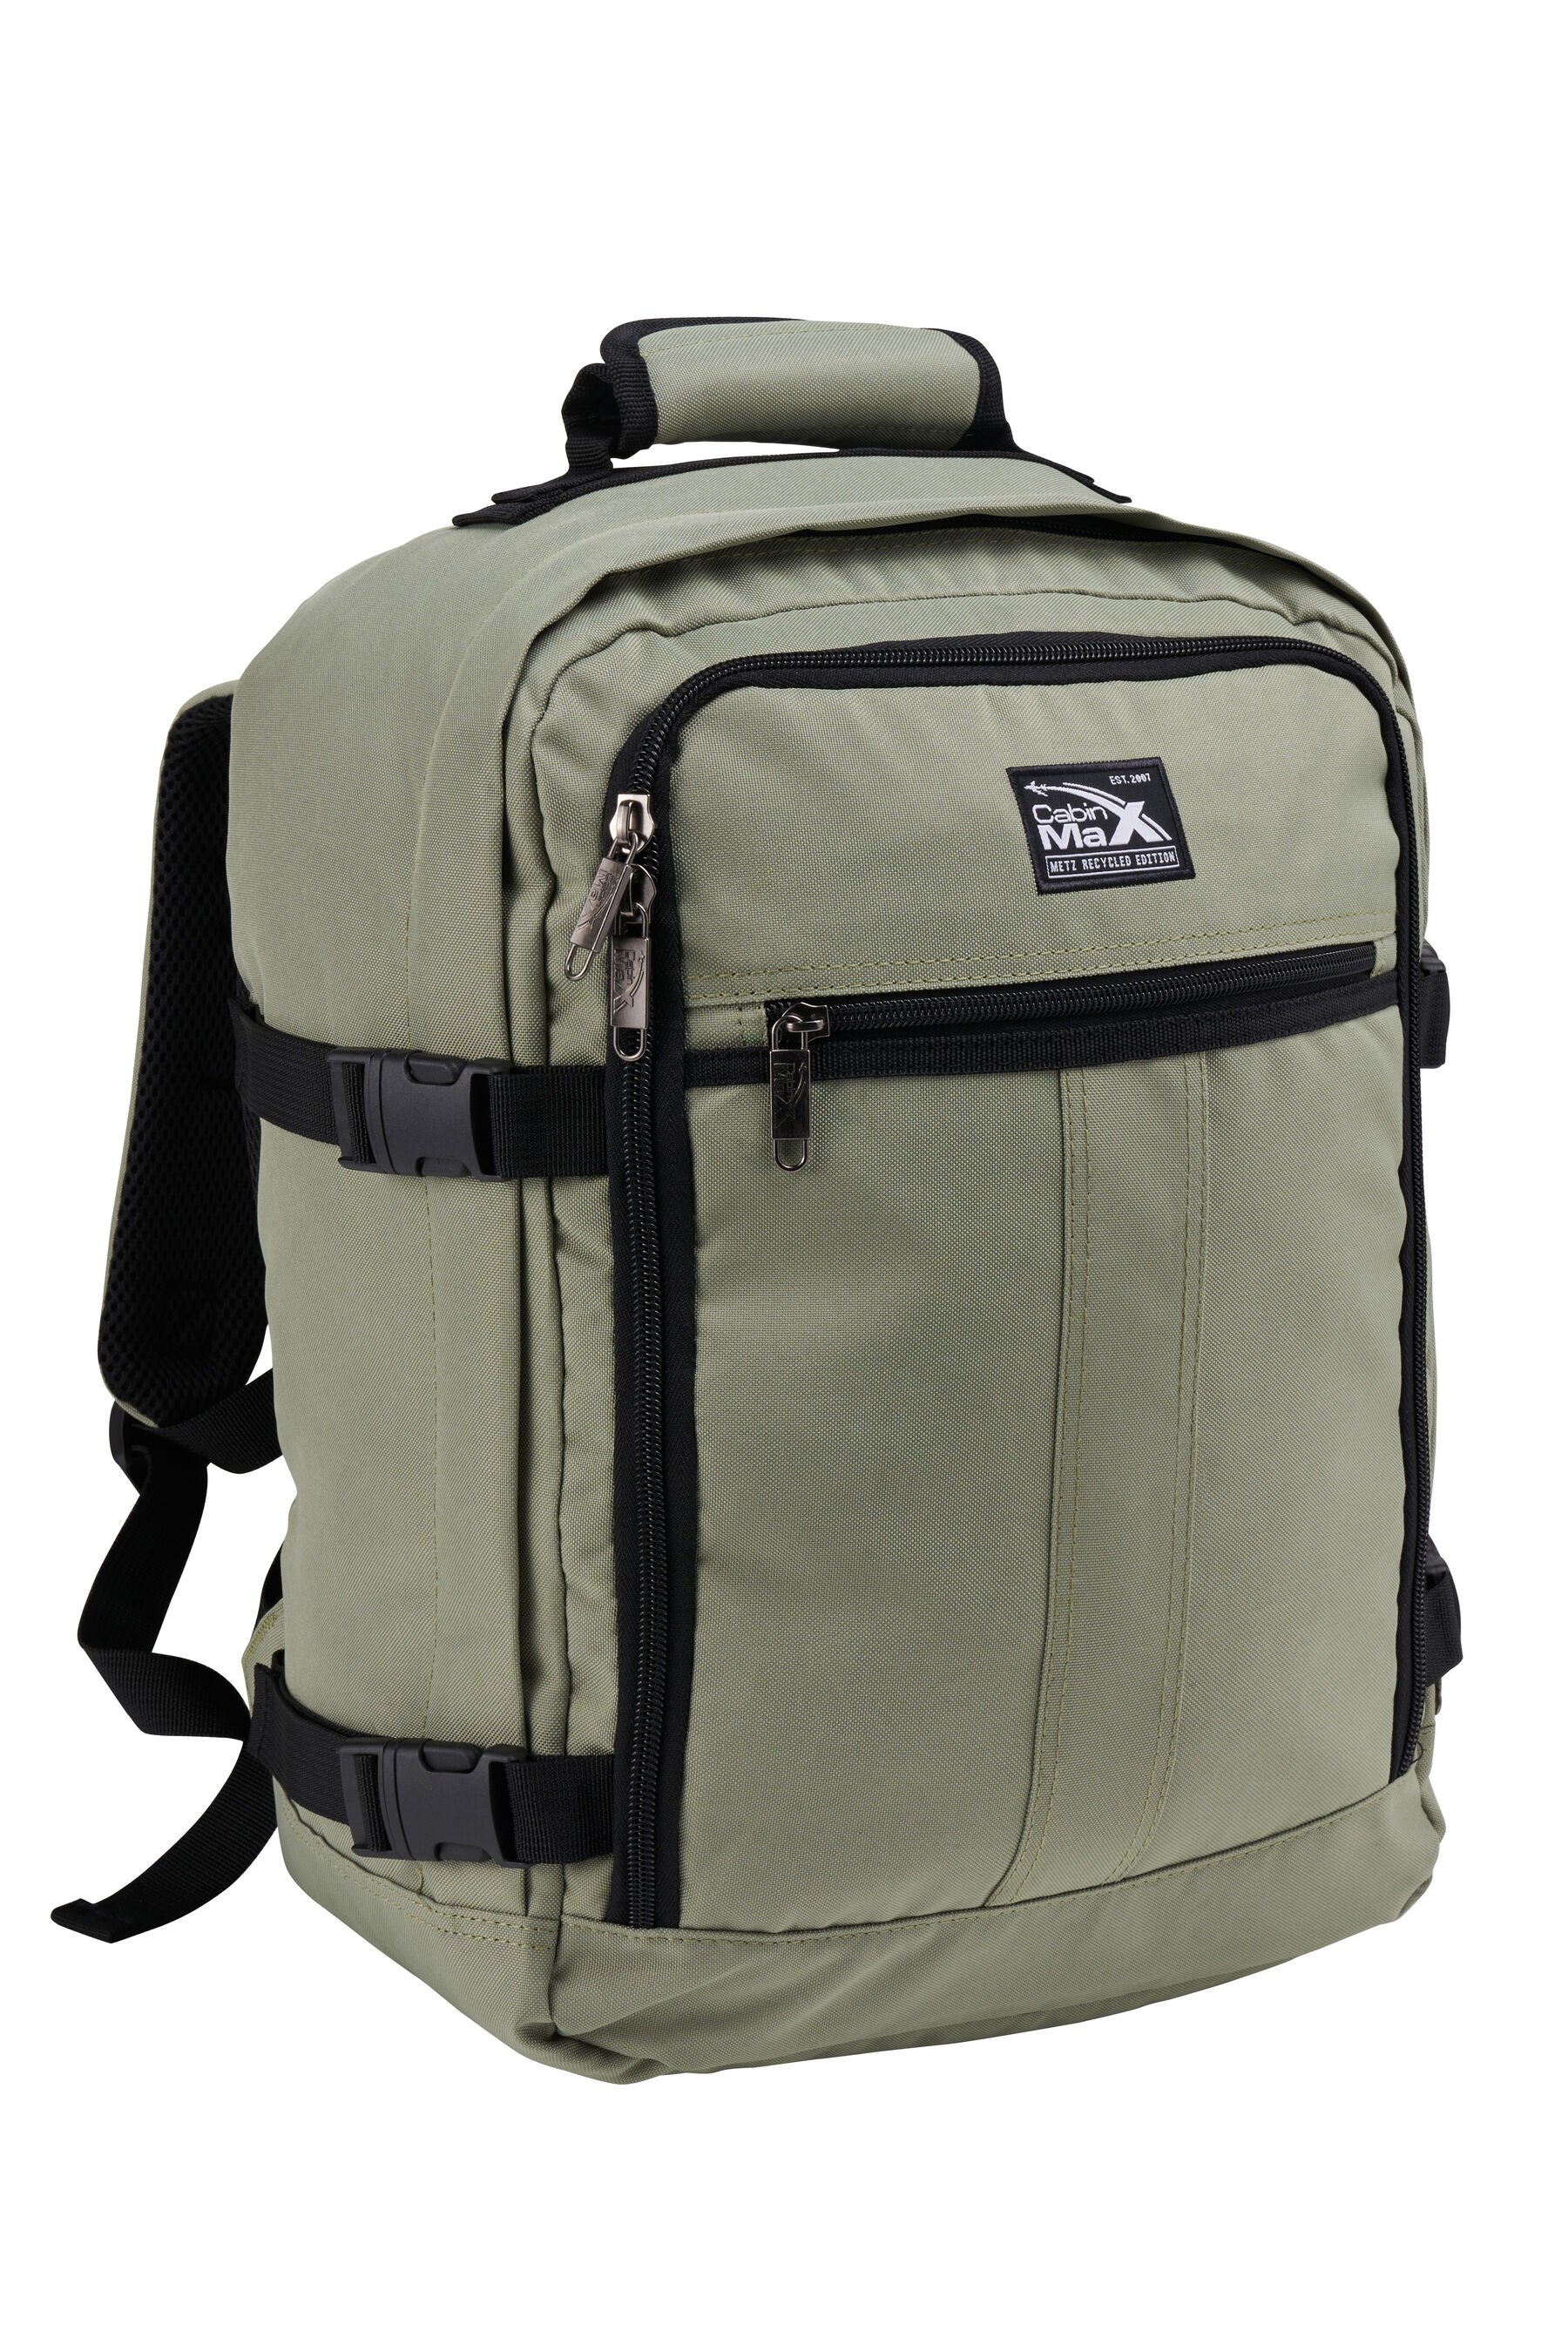 Metz 24L Backpack 40x30x20cm -